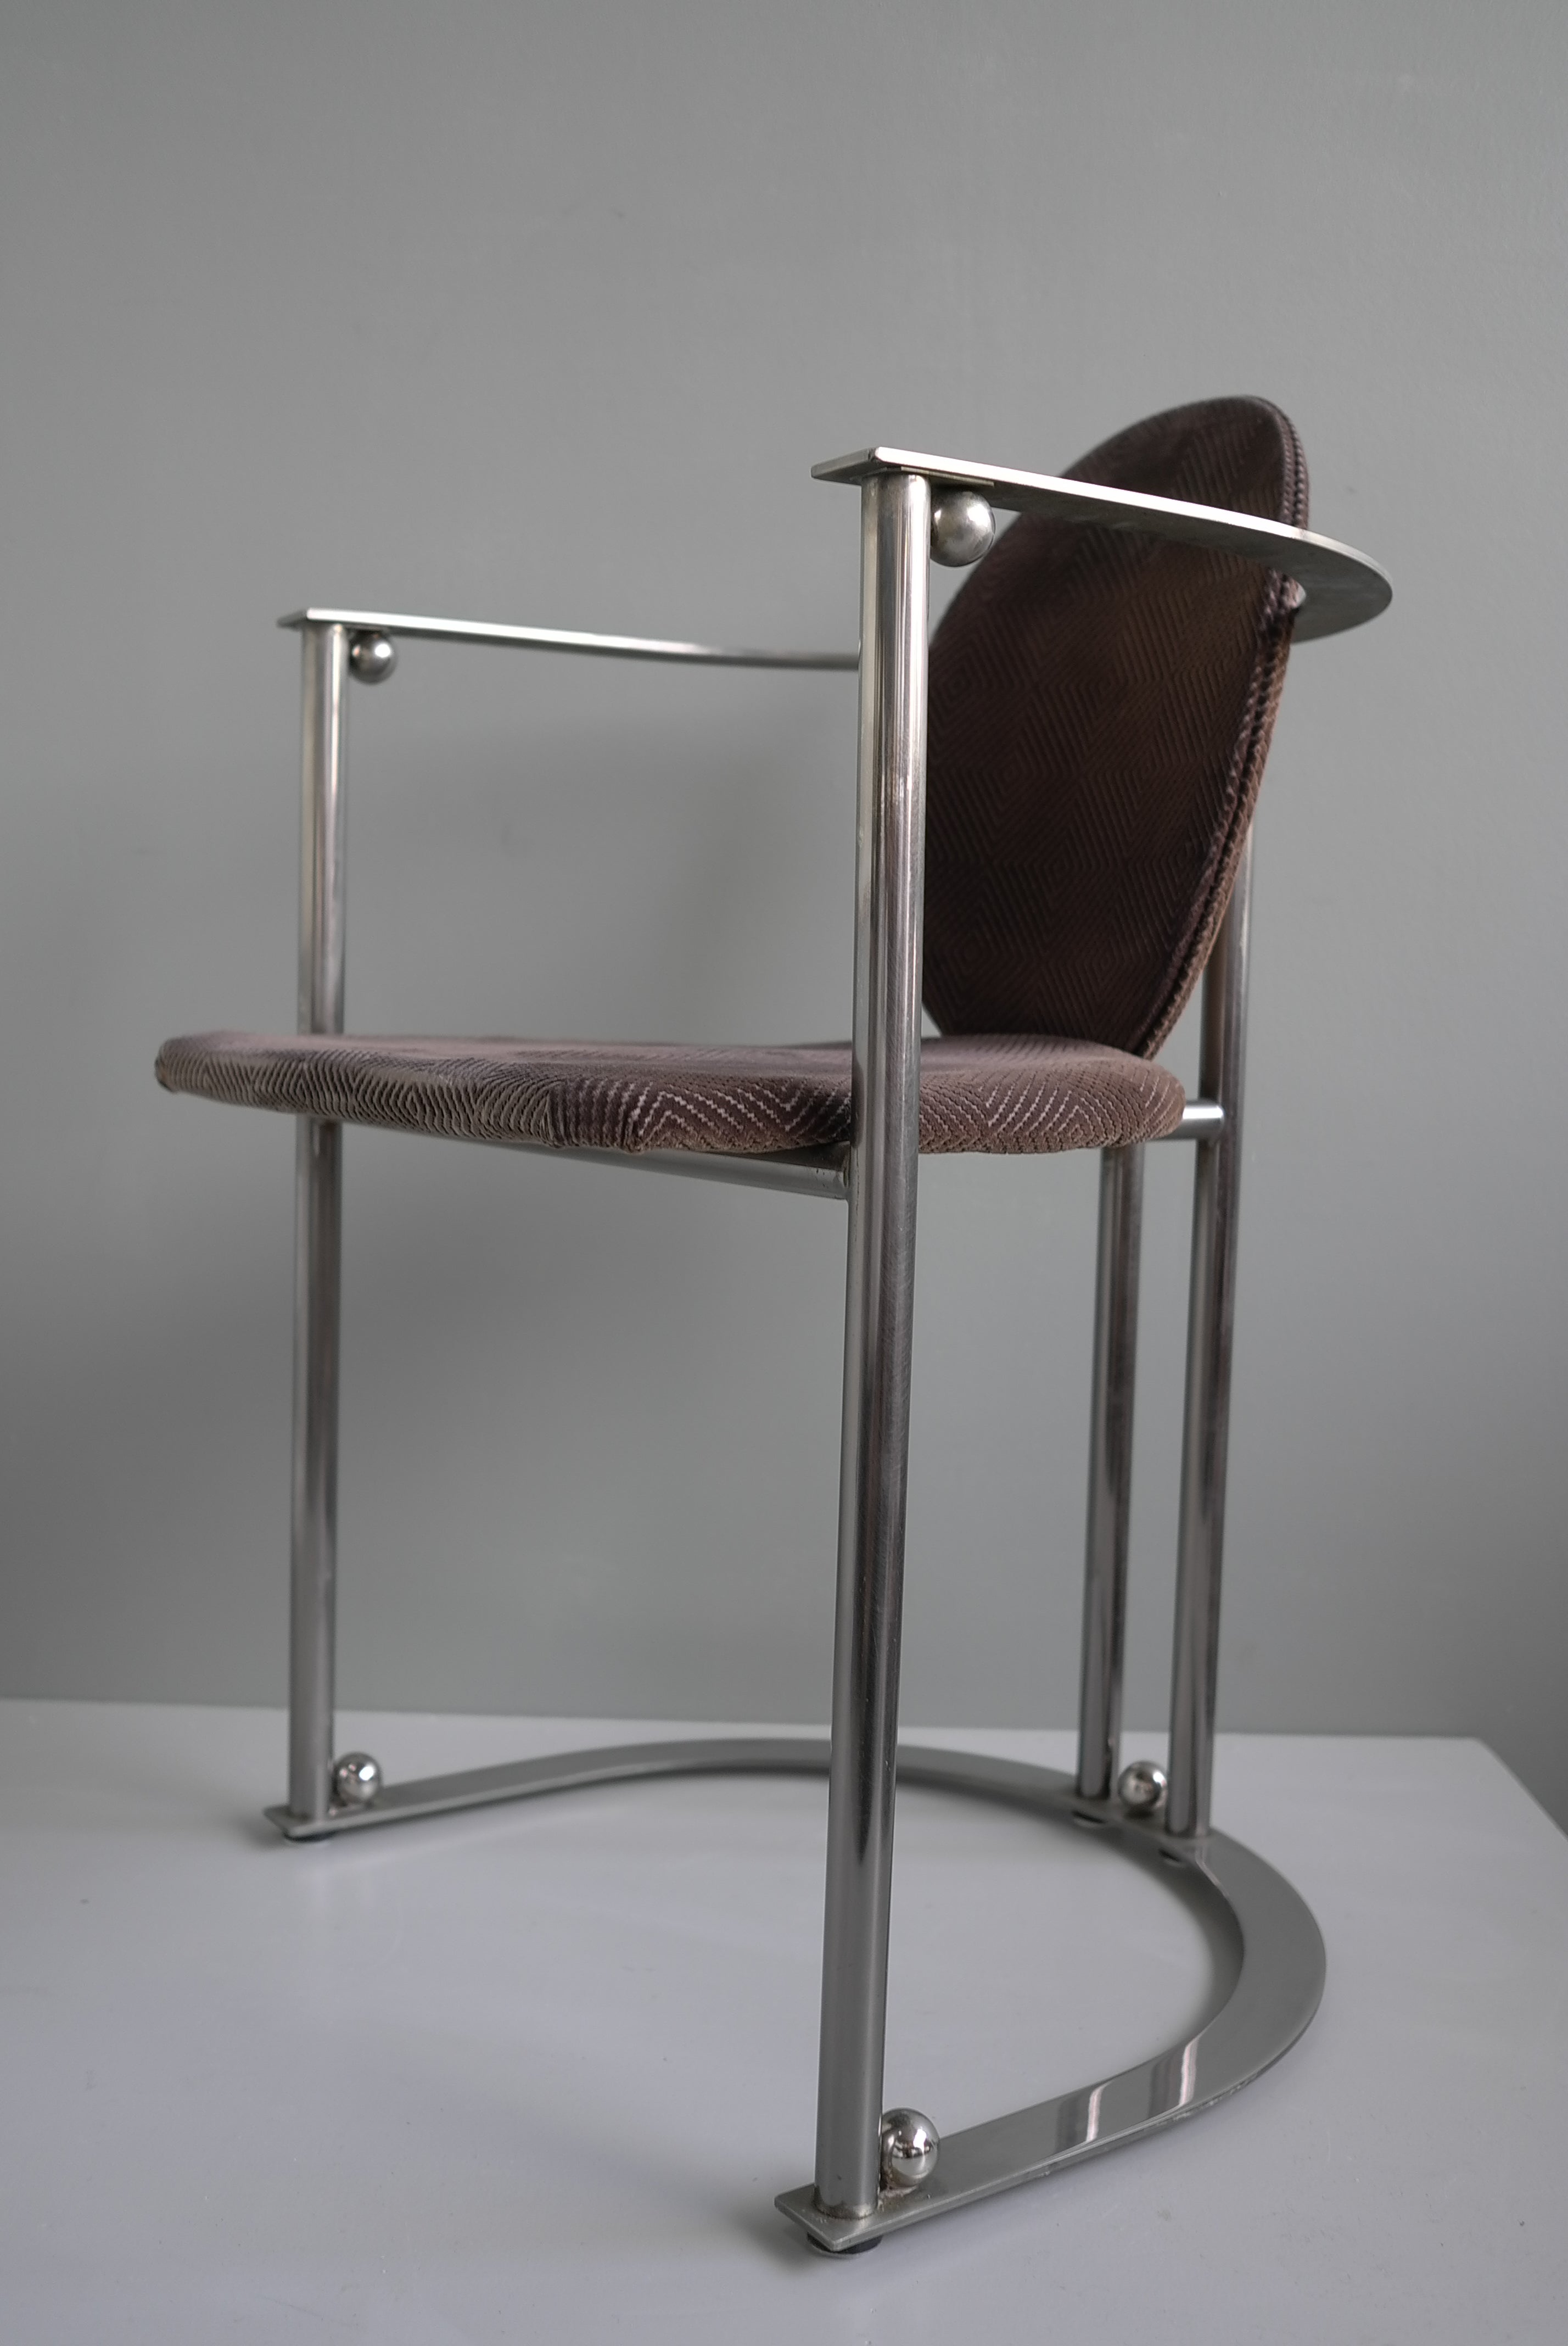 Satz mit sechs Stück  Stil Edelstahl Belgo Chrom 1970er Jahre deco Esszimmerstühle. Sehr gut gemachte schwere Stücke mit schönen Details. Wir haben den Originalstoff beibehalten, aber sie müssen neu gepolstert werden. 

Jeder Stuhl ist: 80cm